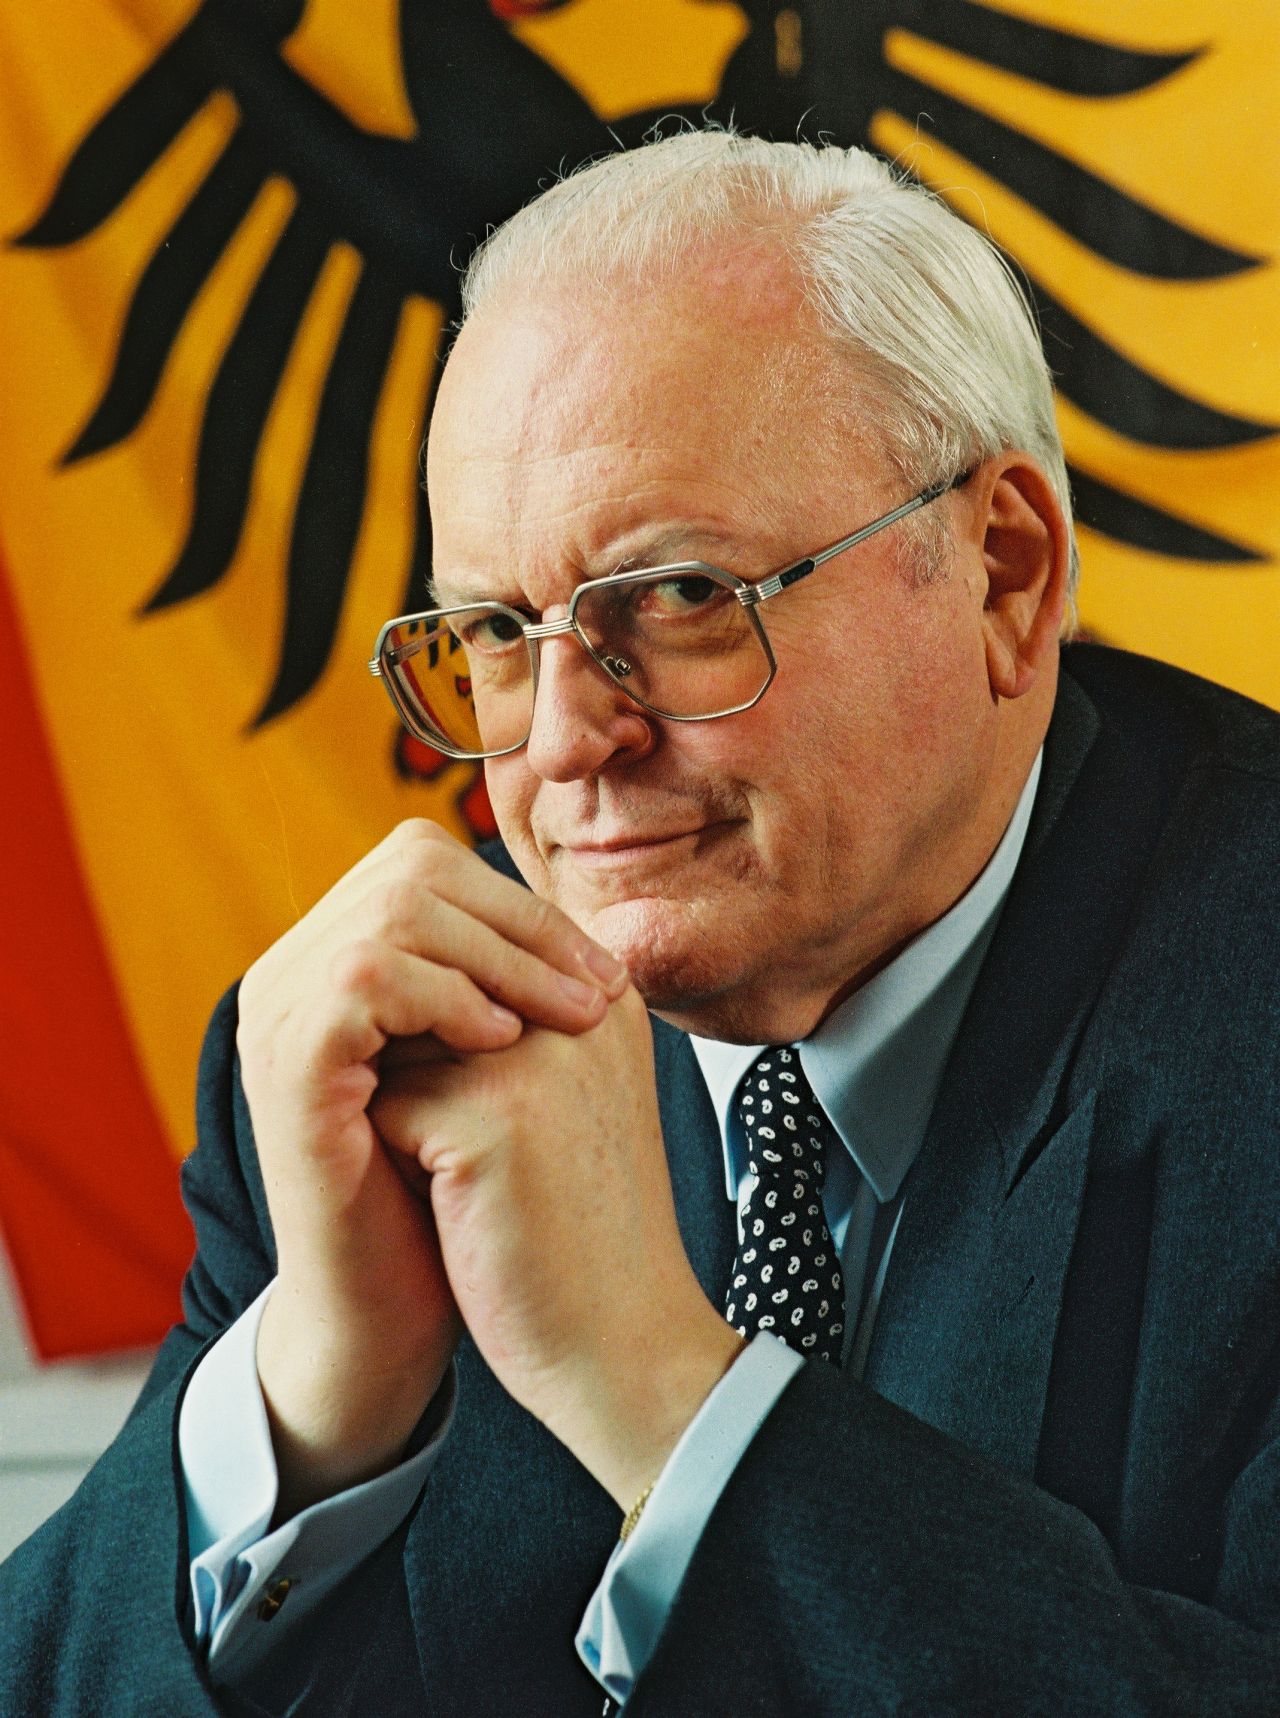 Porträtfoto von Roman Herzog, Bundespräsident (1994-1999).